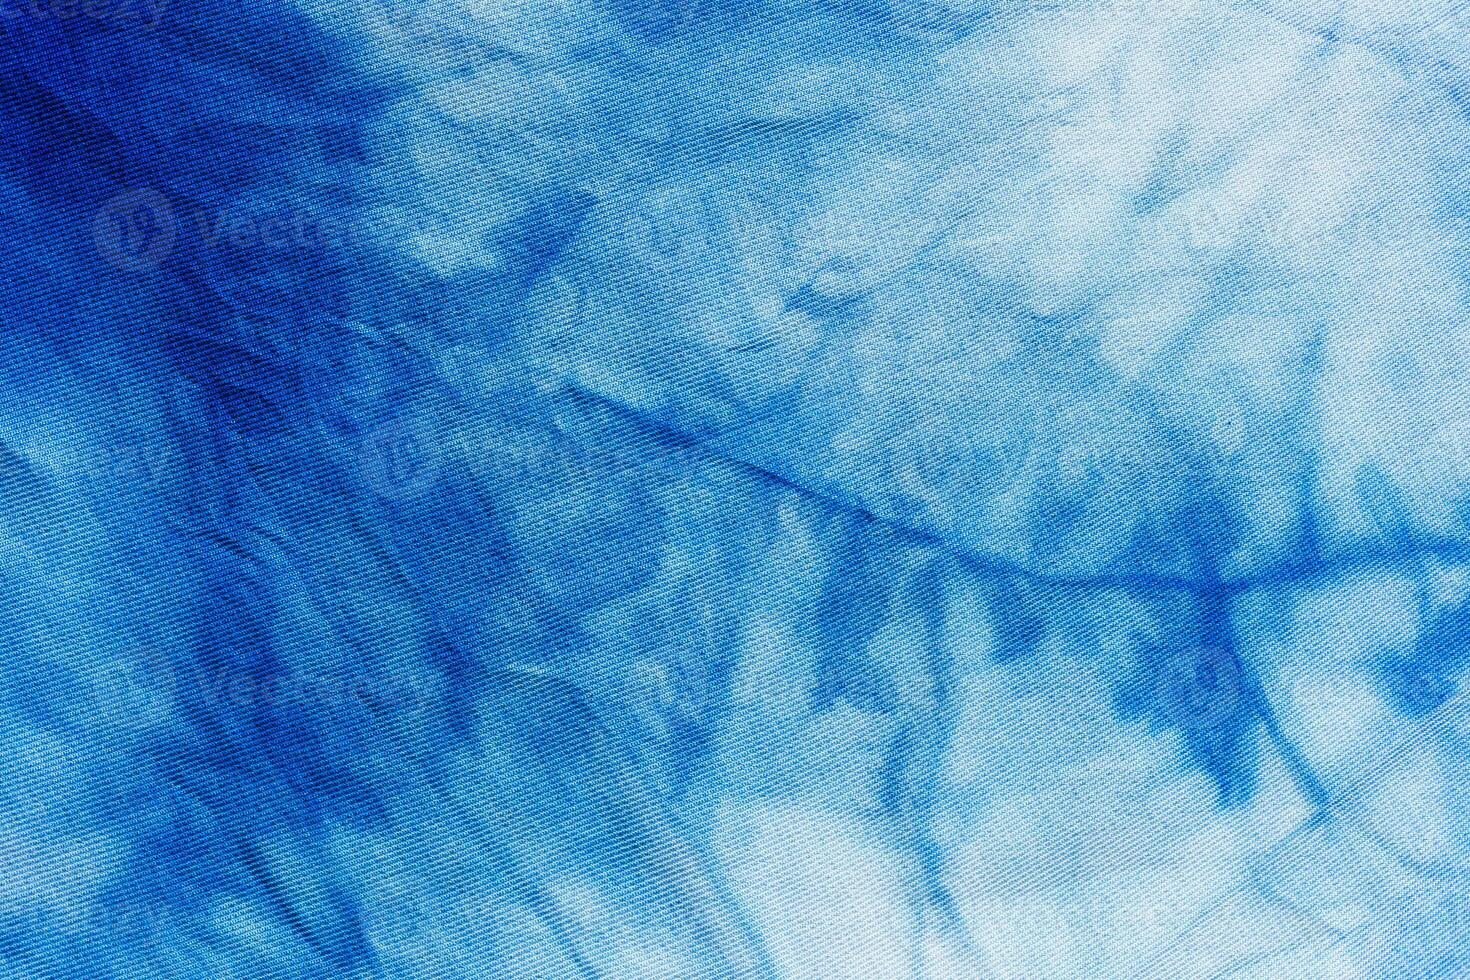 patrón abstracto azul teñido anudado a mano en seda foto